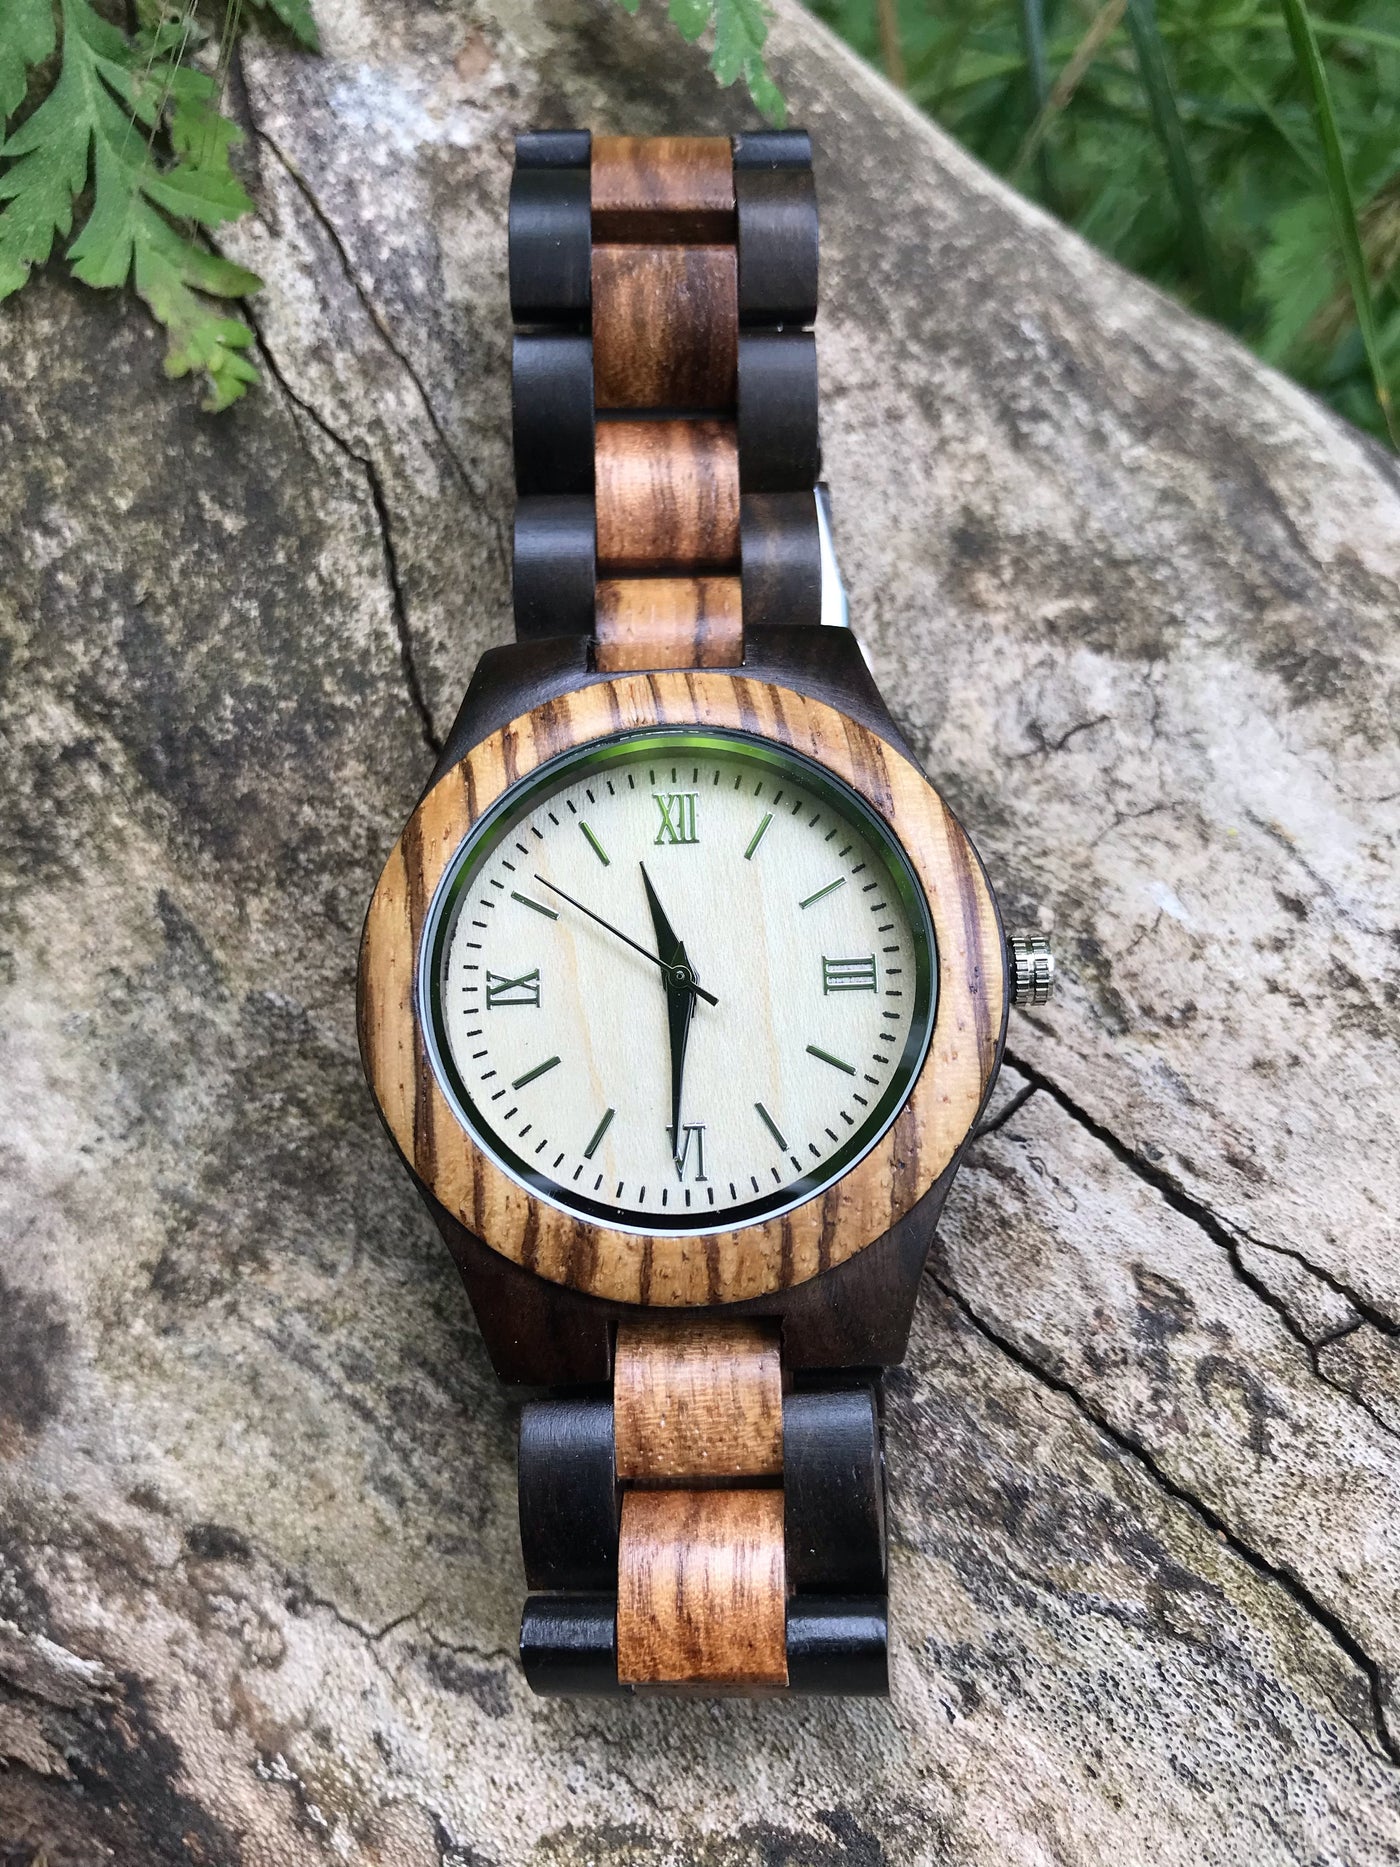 Wooden watch